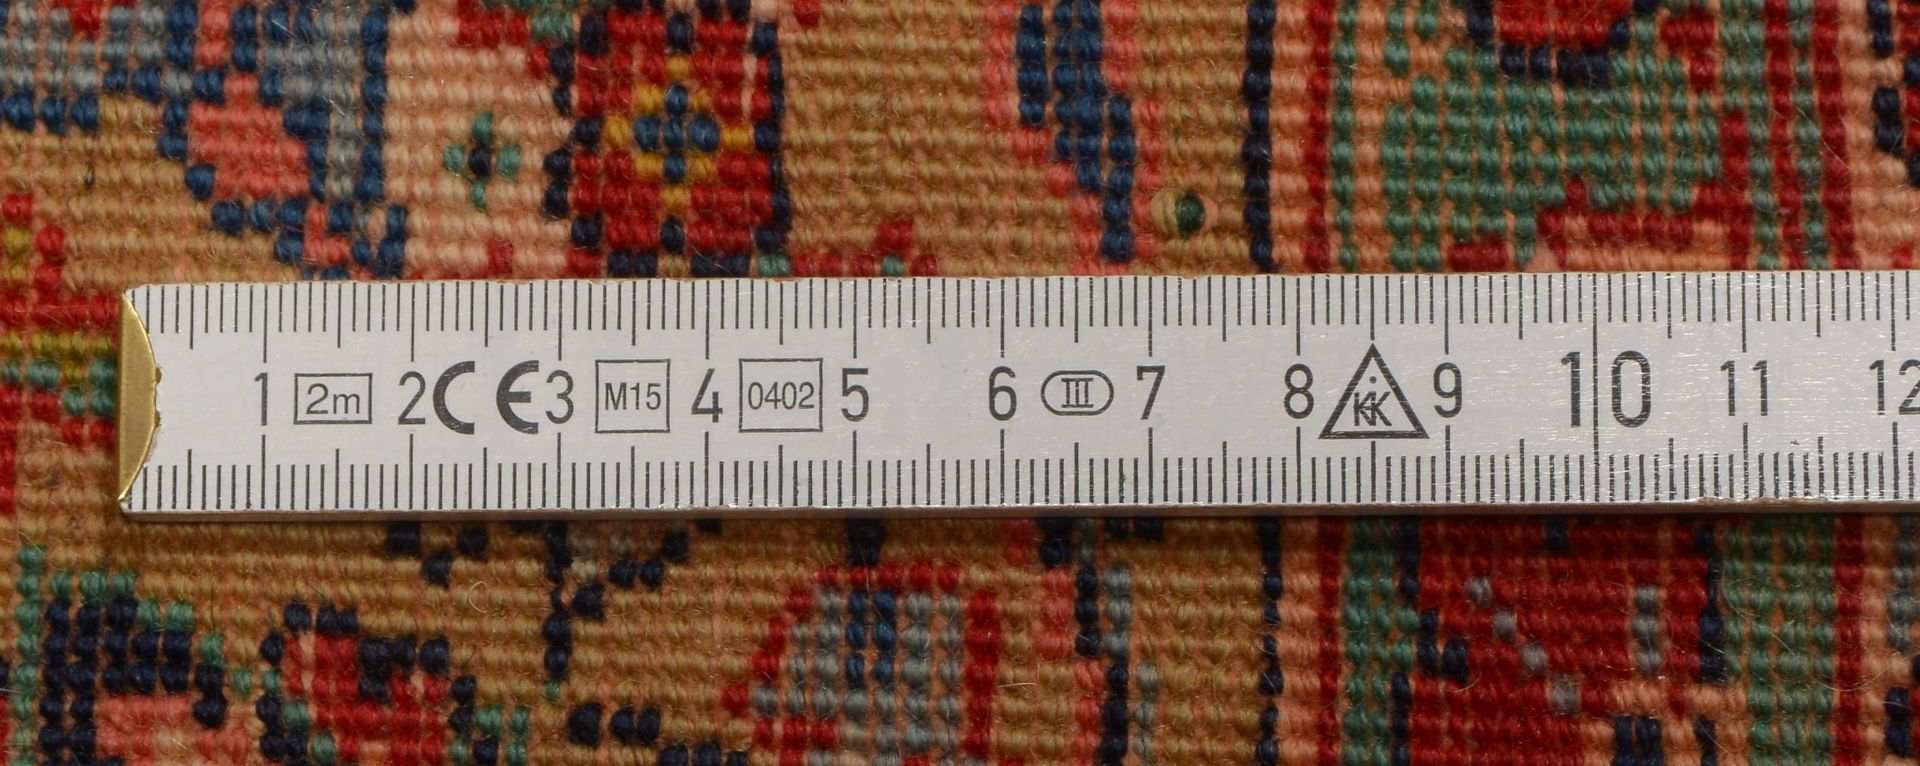 Spiegelkirman, feste Knuepfung, hochflorig, Masse 267 x 184 cm (vereinzelt mit sichtbaren Knotenkoep - Image 2 of 2